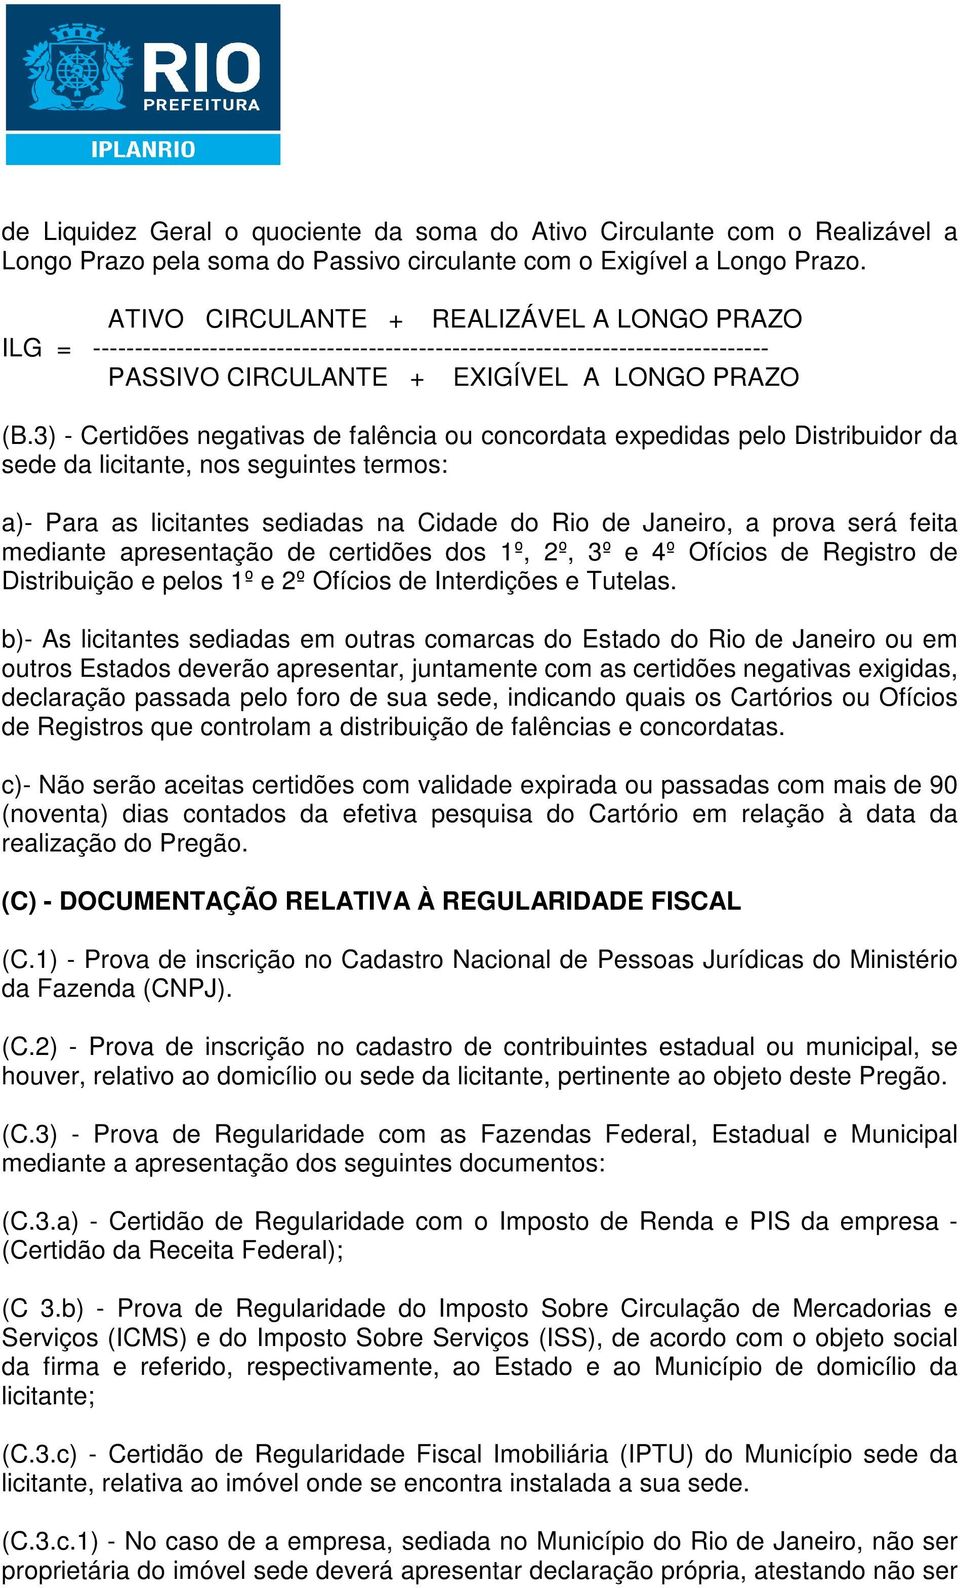 3) - Certidões negativas de falência ou concordata expedidas pelo Distribuidor da sede da licitante, nos seguintes termos: a)- Para as licitantes sediadas na Cidade do Rio de Janeiro, a prova será